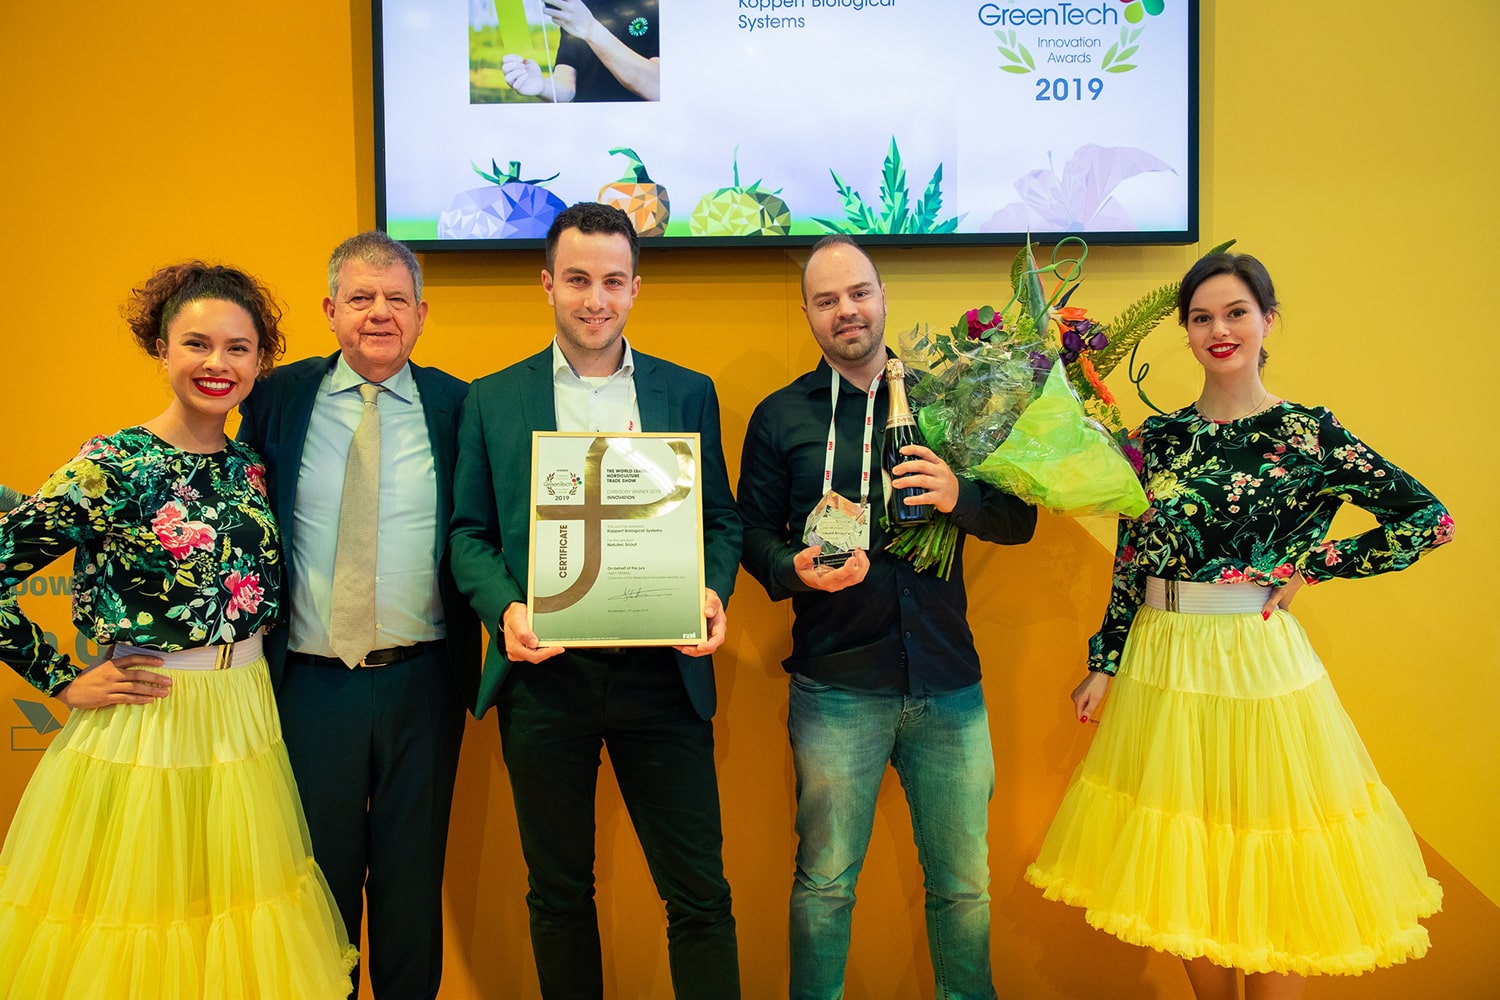 GreenTech 2019: Innovation awards winners announced!